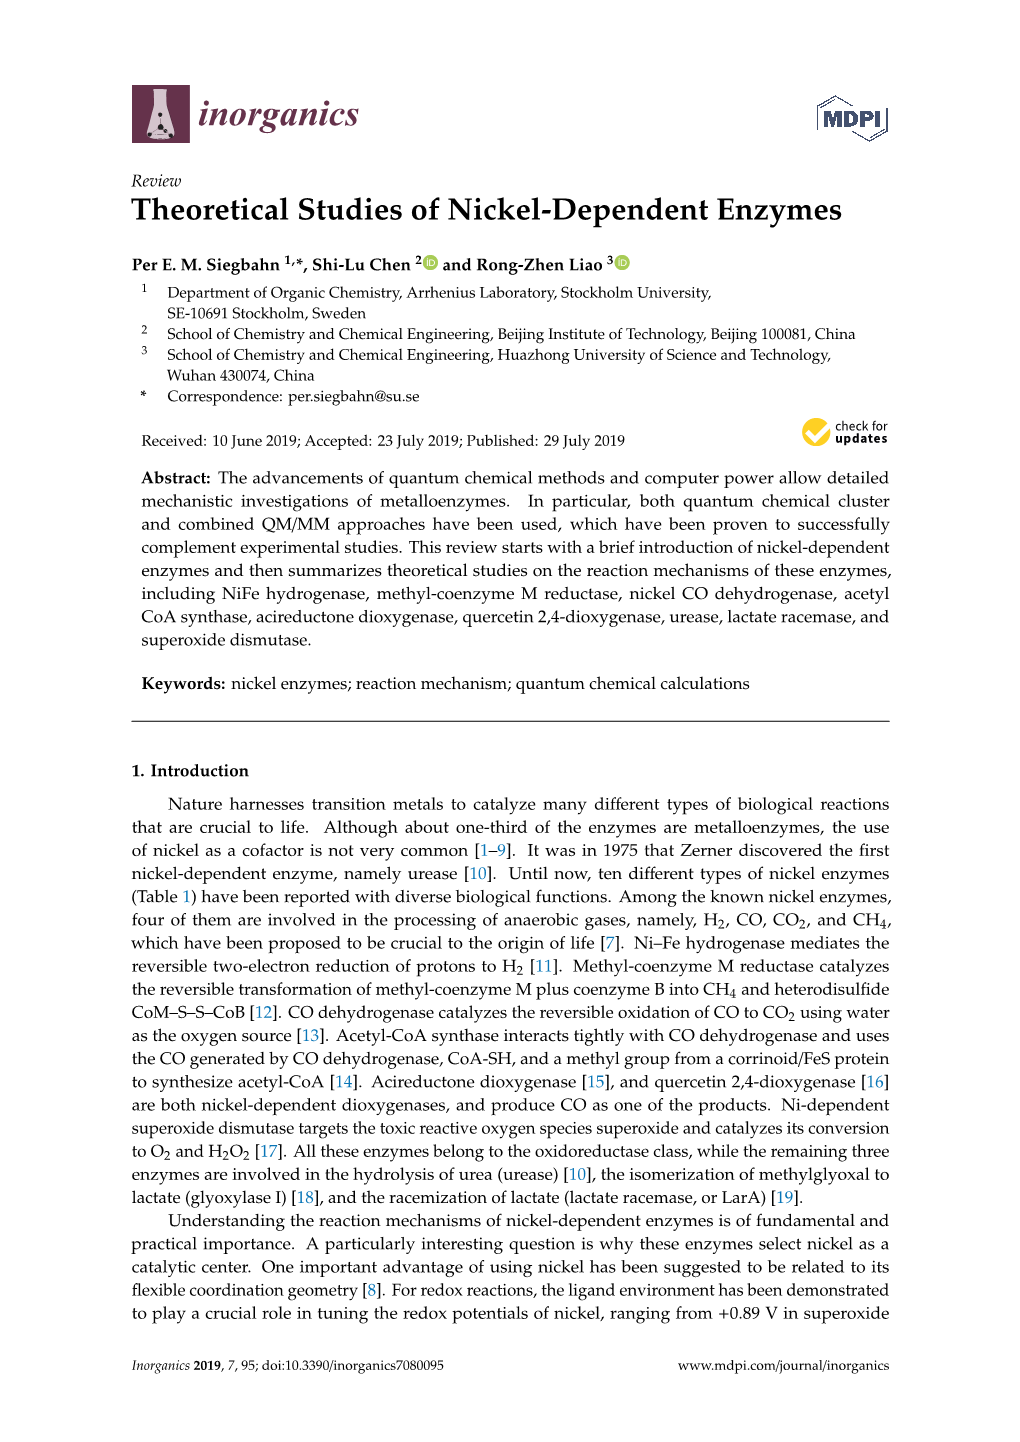 Theoretical Studies of Nickel-Dependent Enzymes